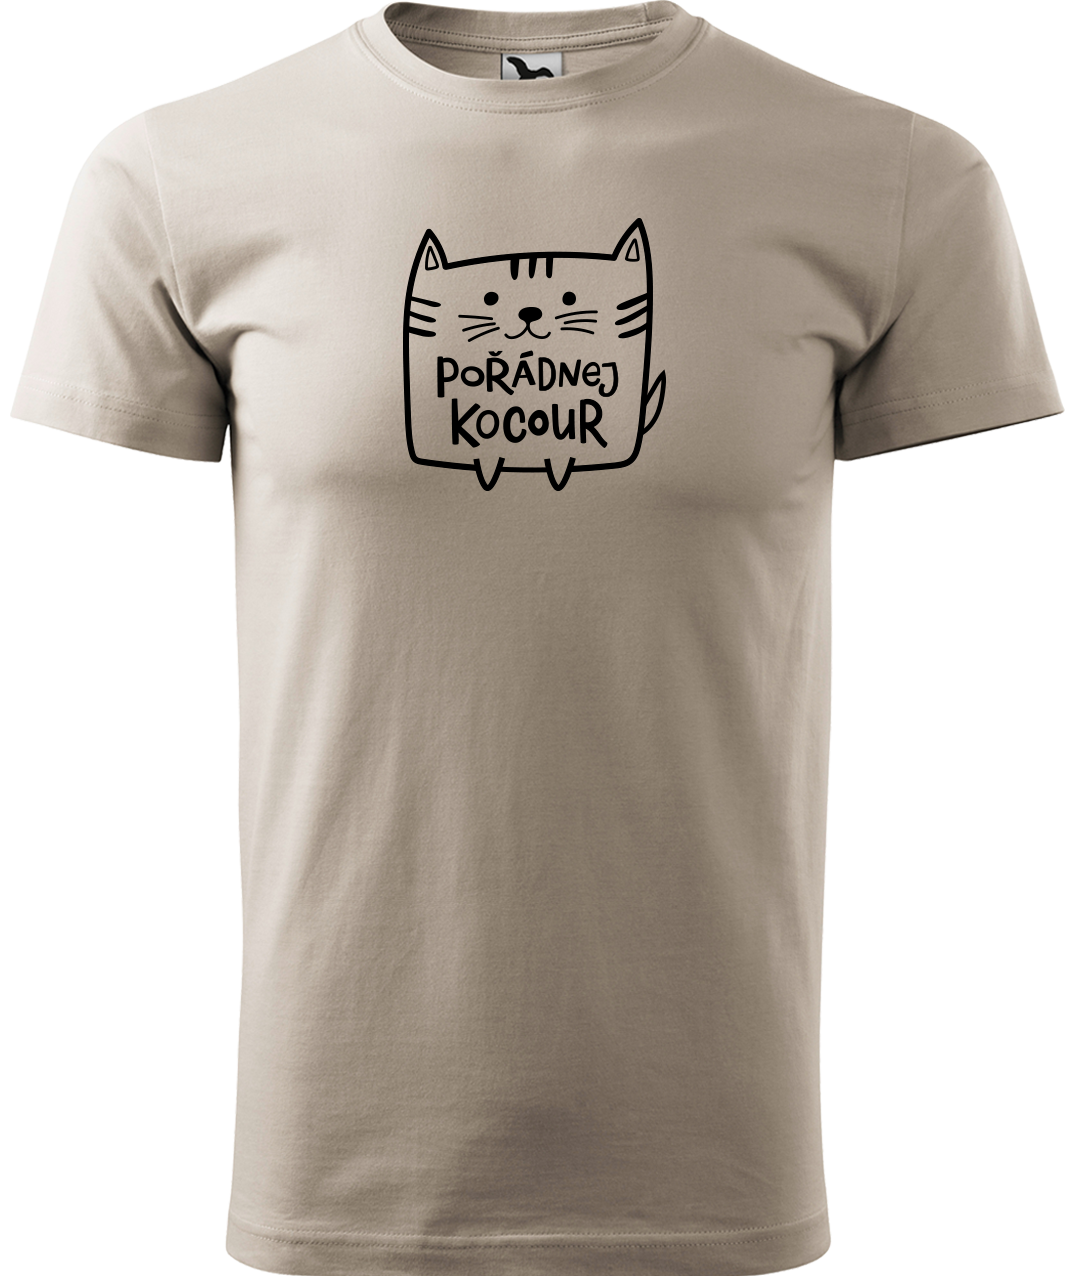 Pánské tričko s kočkou - Pořádnej kocour Velikost: XL, Barva: Ledově šedá (51)